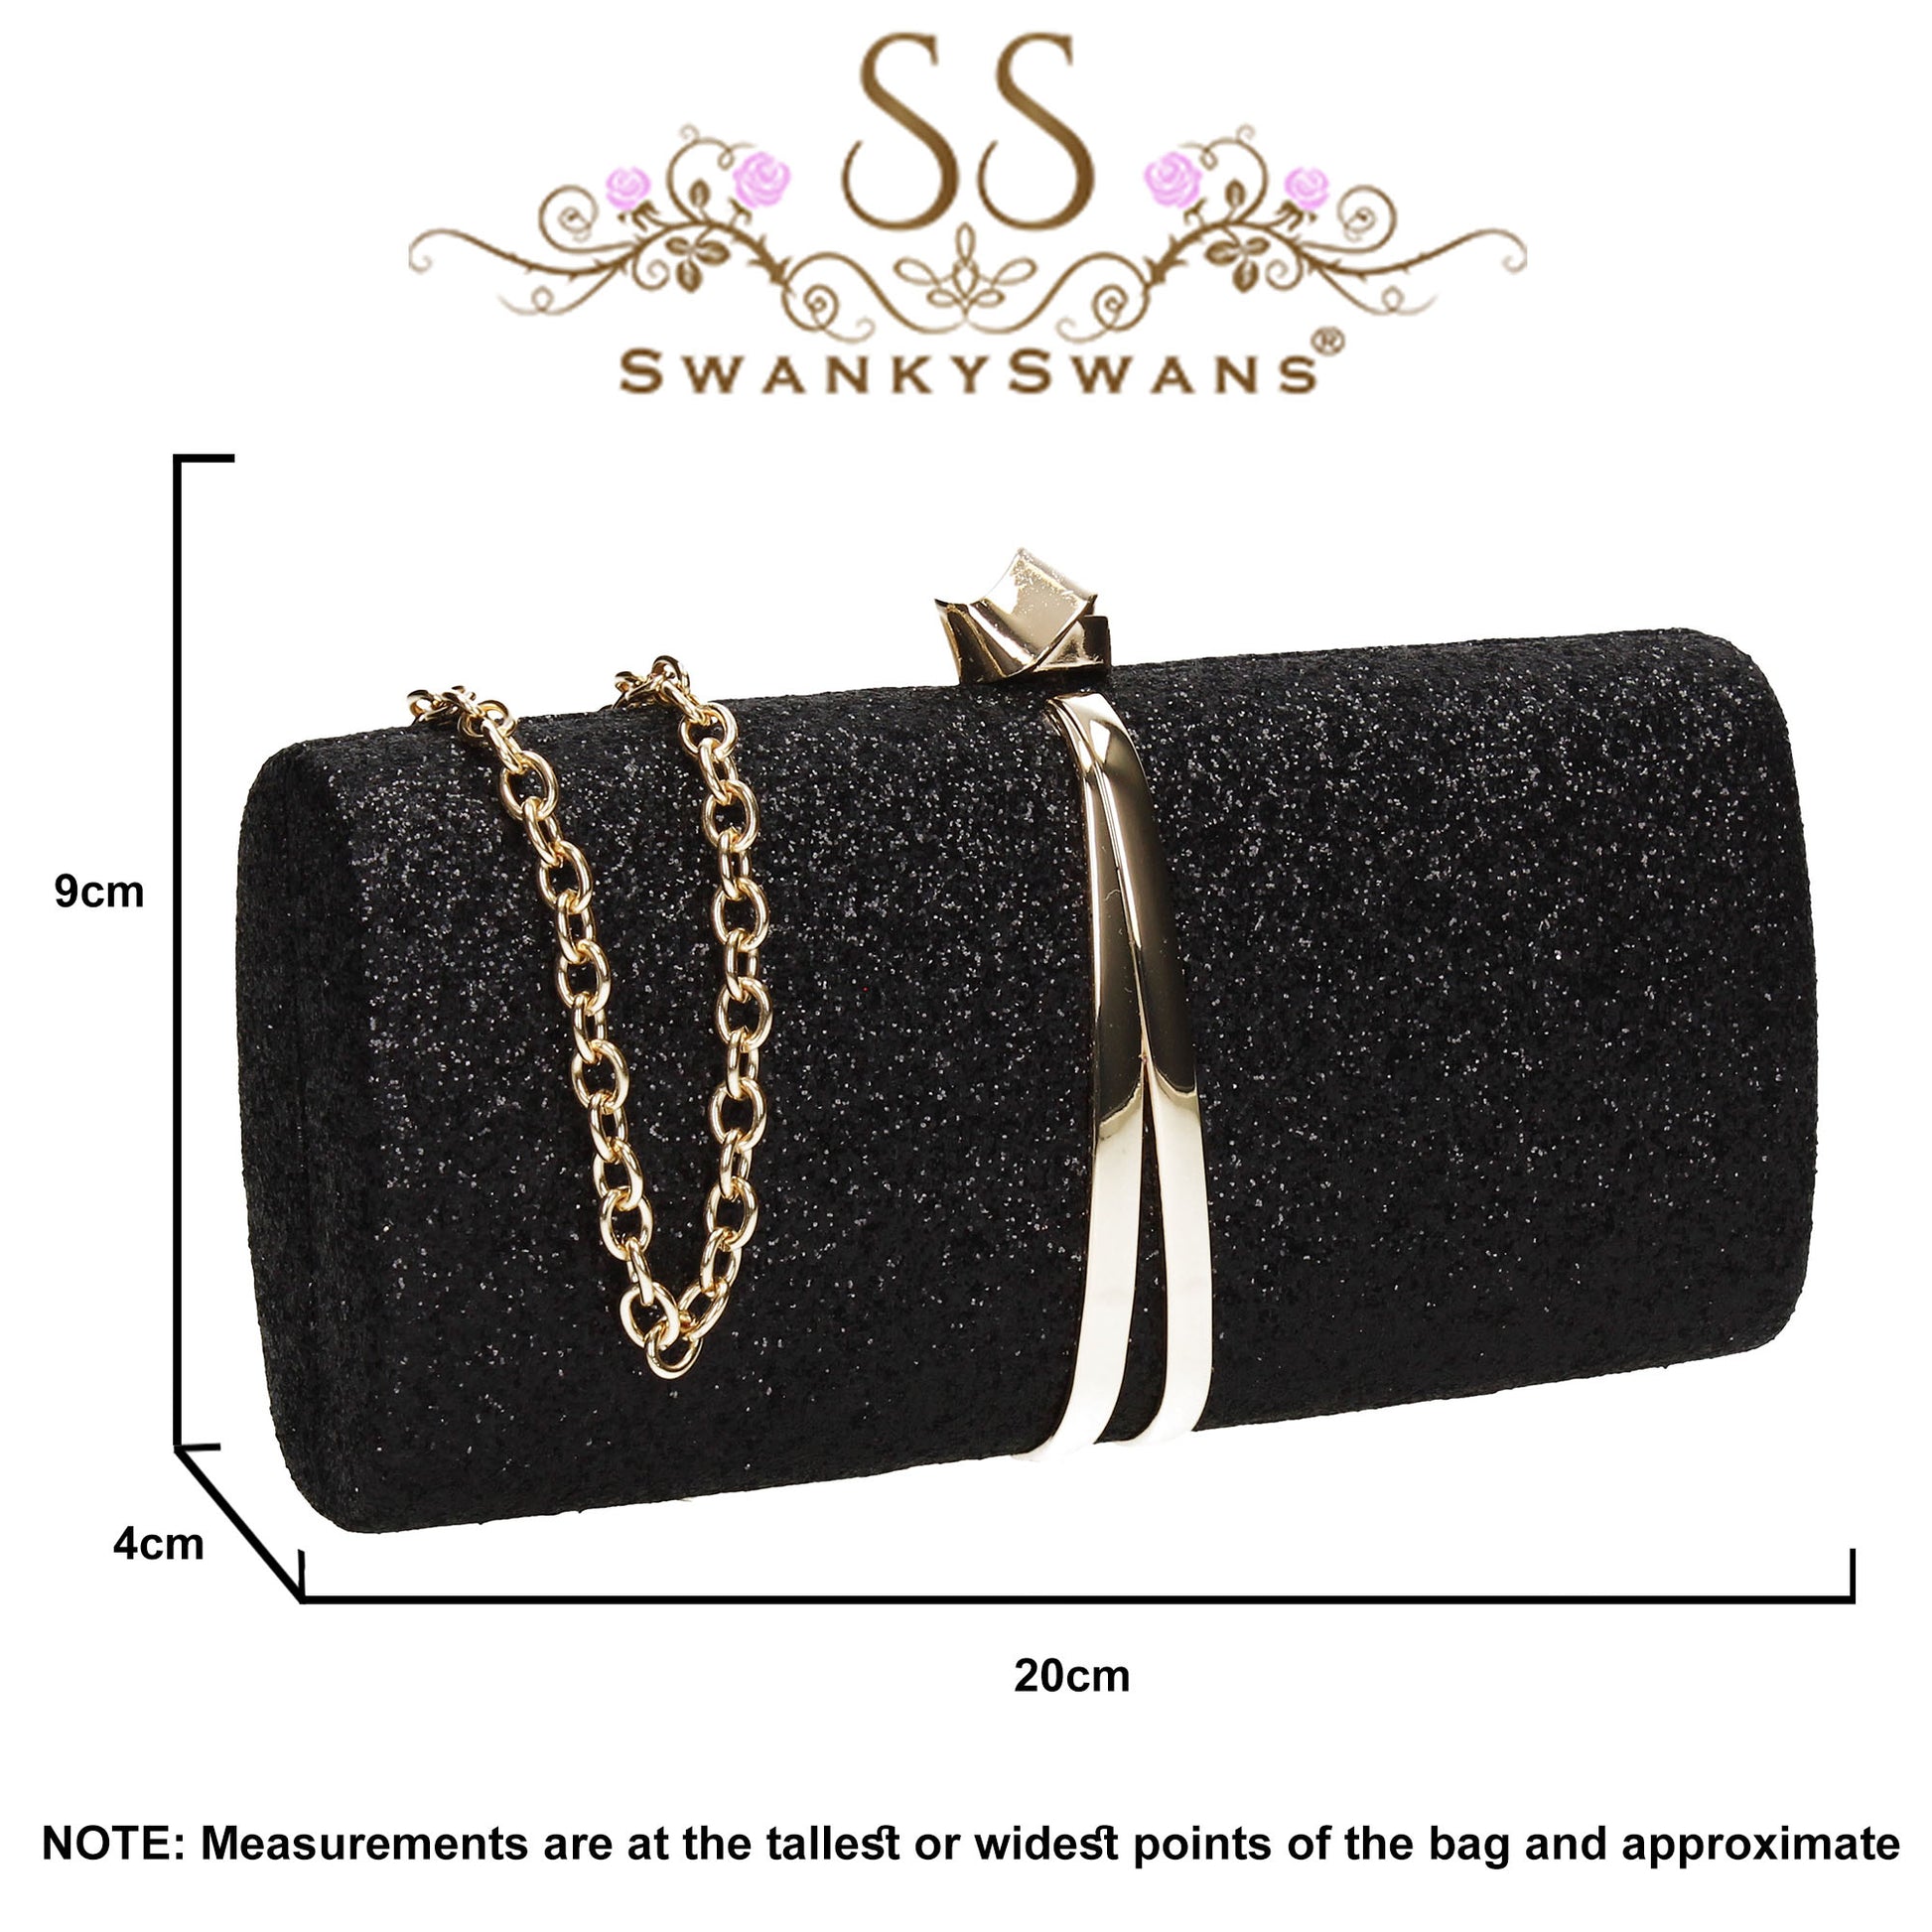 SWANKYSWANS Daisy Clutch Bag Black Cute Cheap Clutch Bag For Weddings School and Work